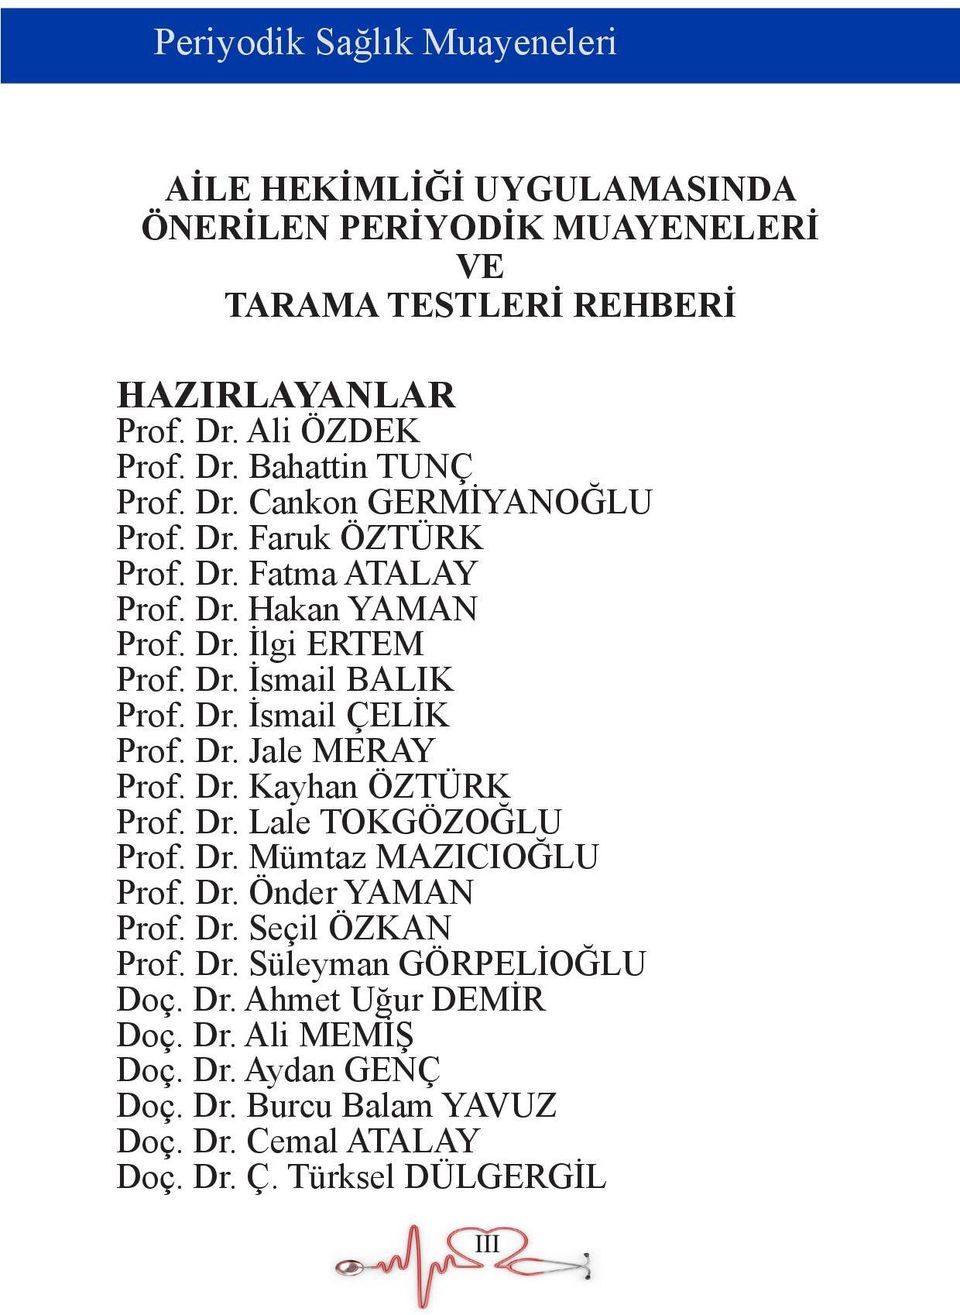 Dr. Jale MERAY Prof. Dr. Kayhan ÖZTÜRK Prof. Dr. Lale TOKGÖZOĞLU Prof. Dr. Mümtaz MAZICIOĞLU Prof. Dr. Önder YAMAN Prof. Dr. Seçil ÖZKAN Prof. Dr. Süleyman GÖRPELİOĞLU Doç.